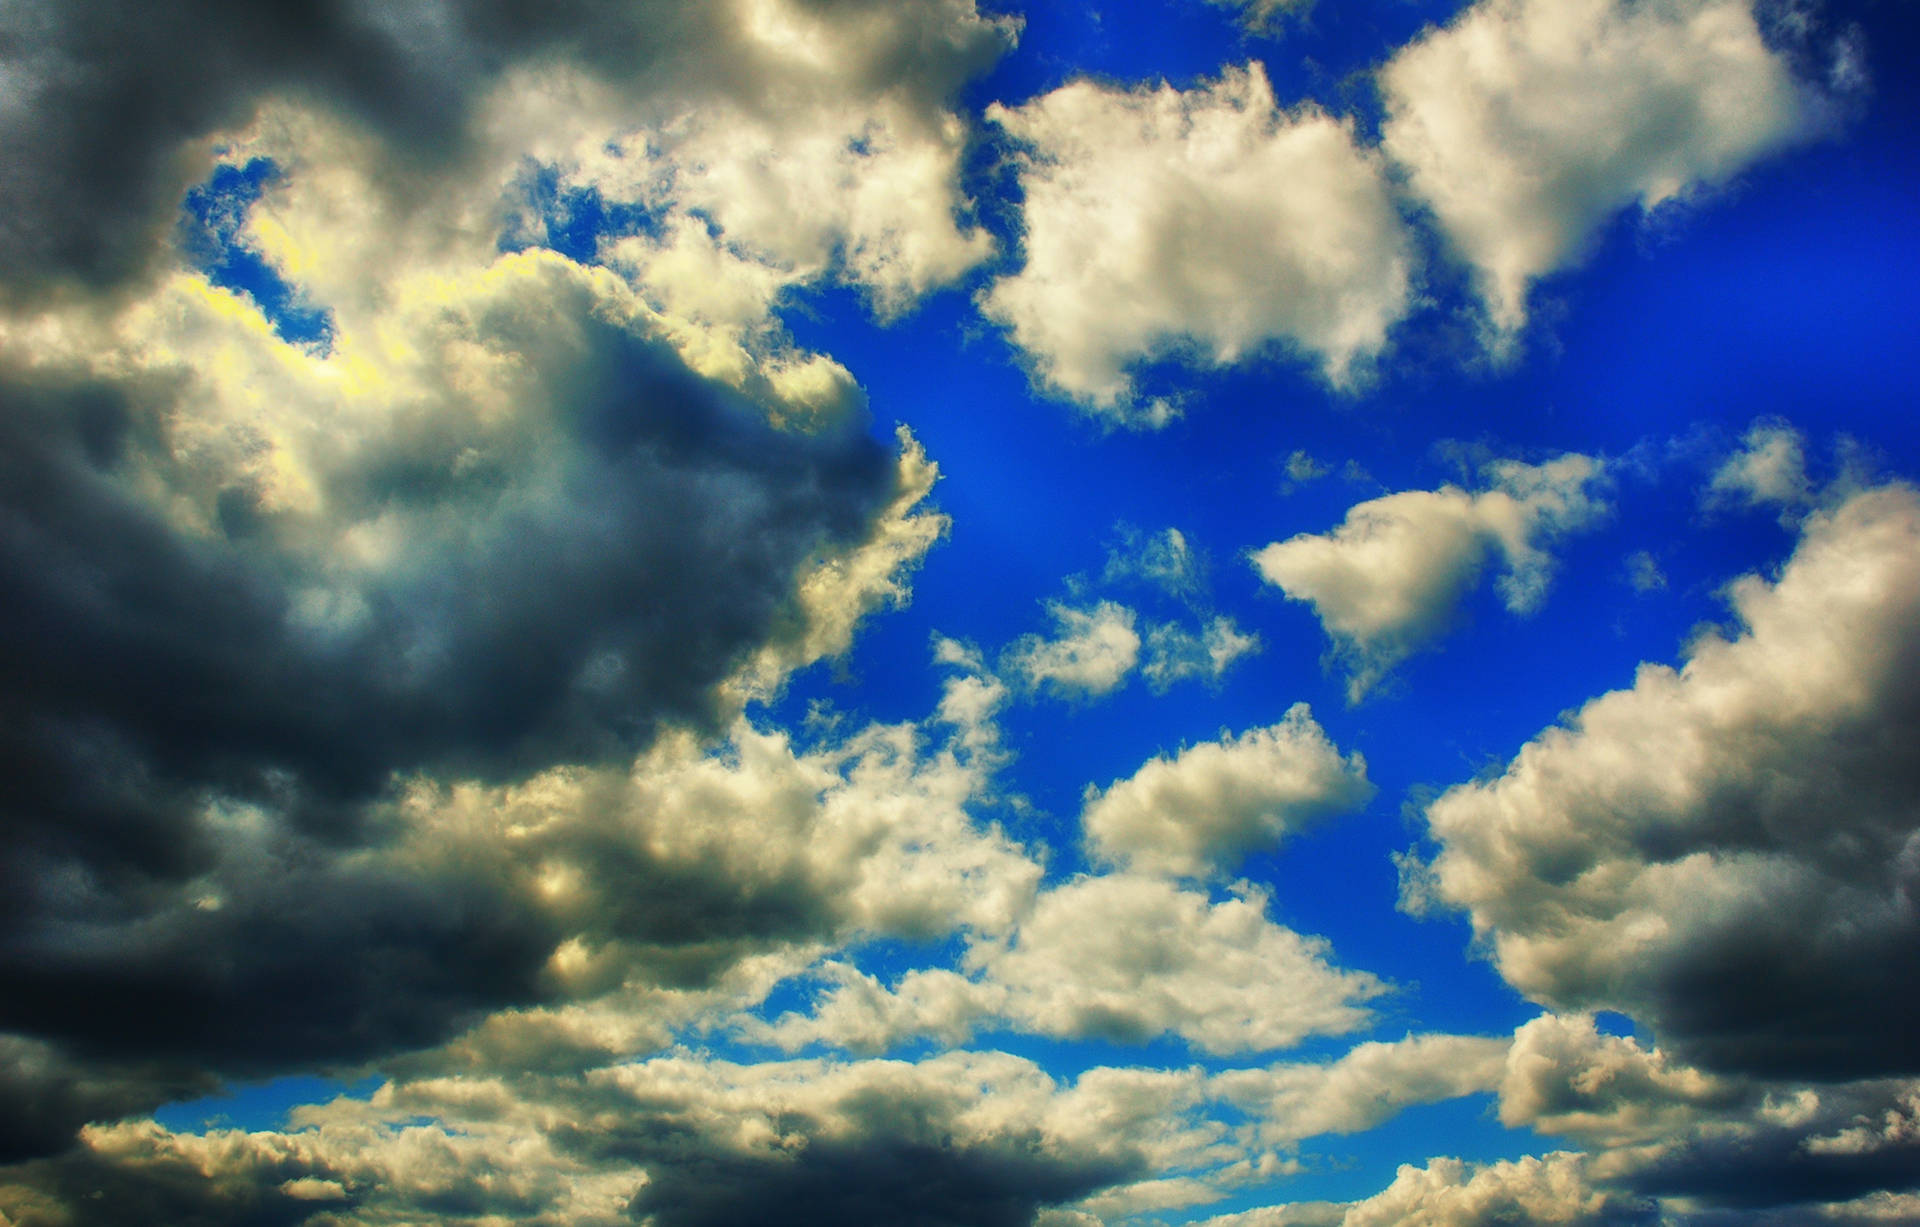 Nubesy Cielo Saturados En Alta Definición. Fondo de pantalla